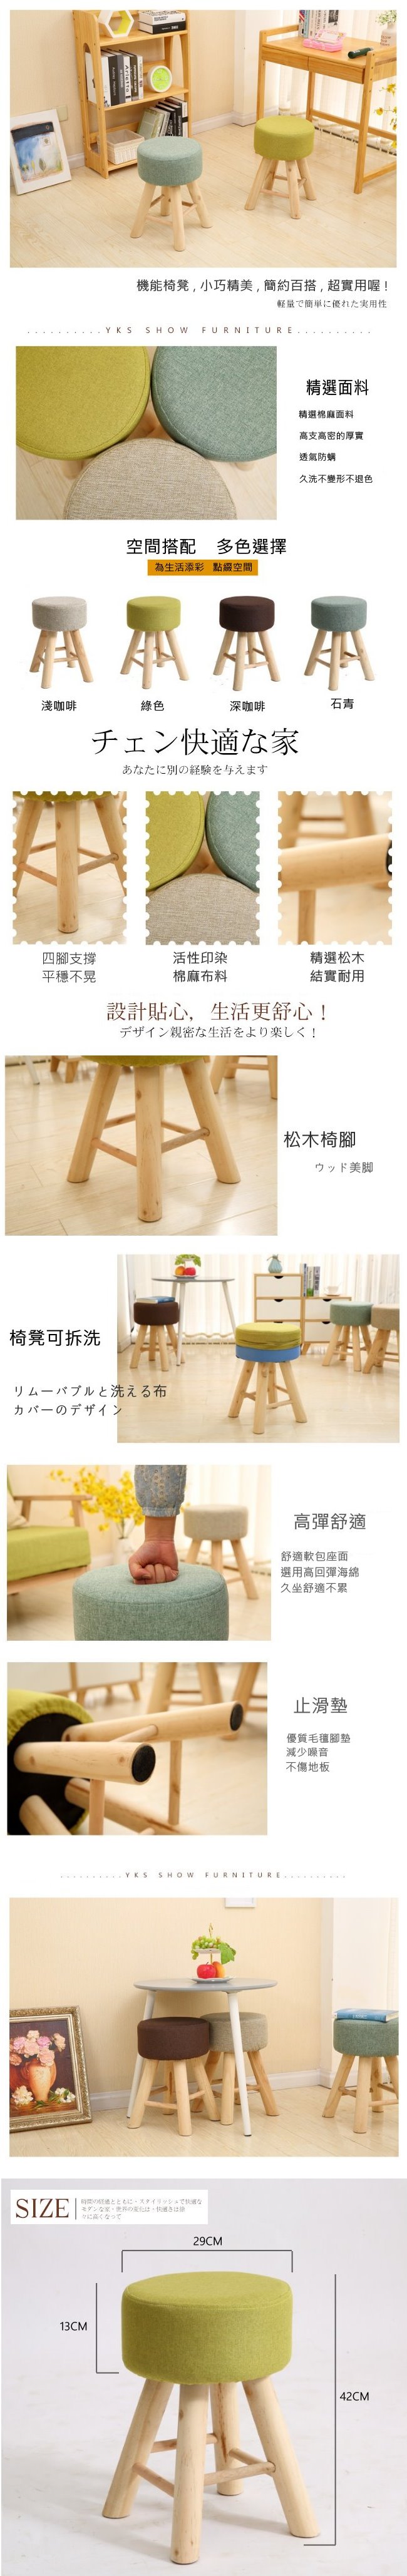 京采高腳造型小凳椅